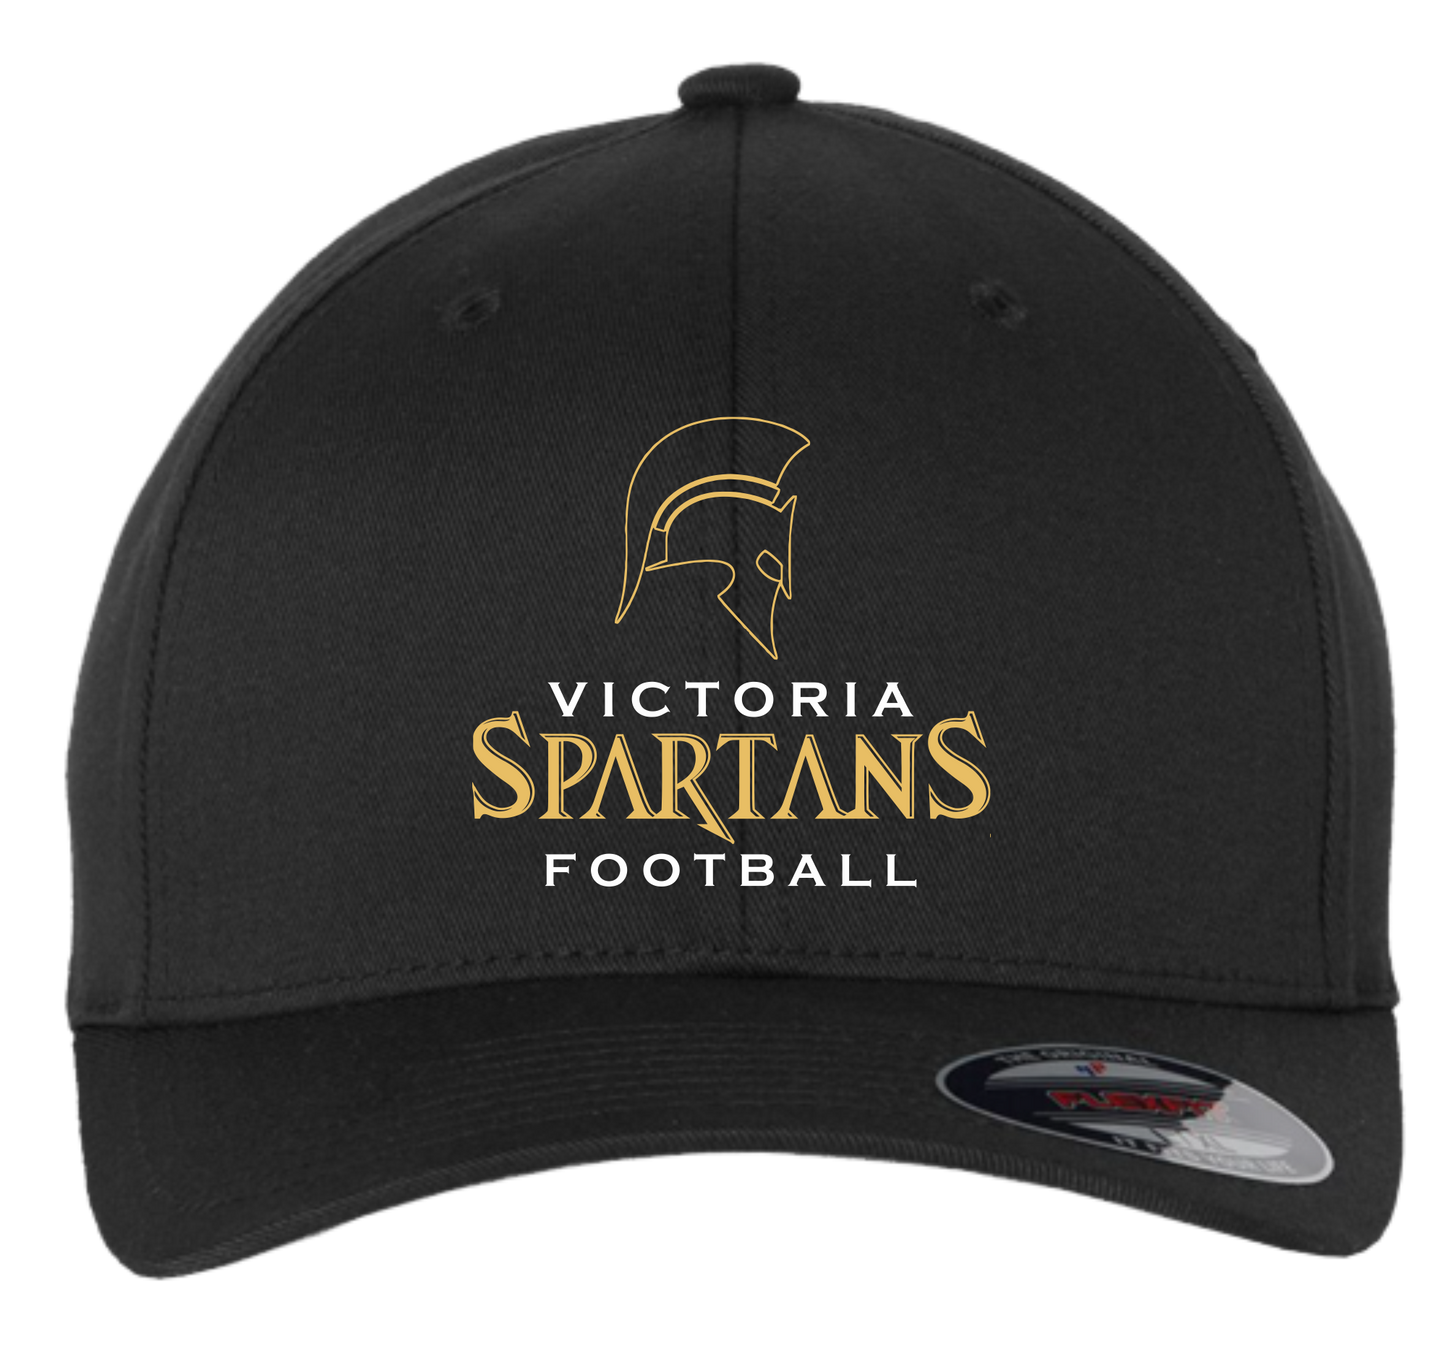 Victoria Spartans Football Flex Fit Hat